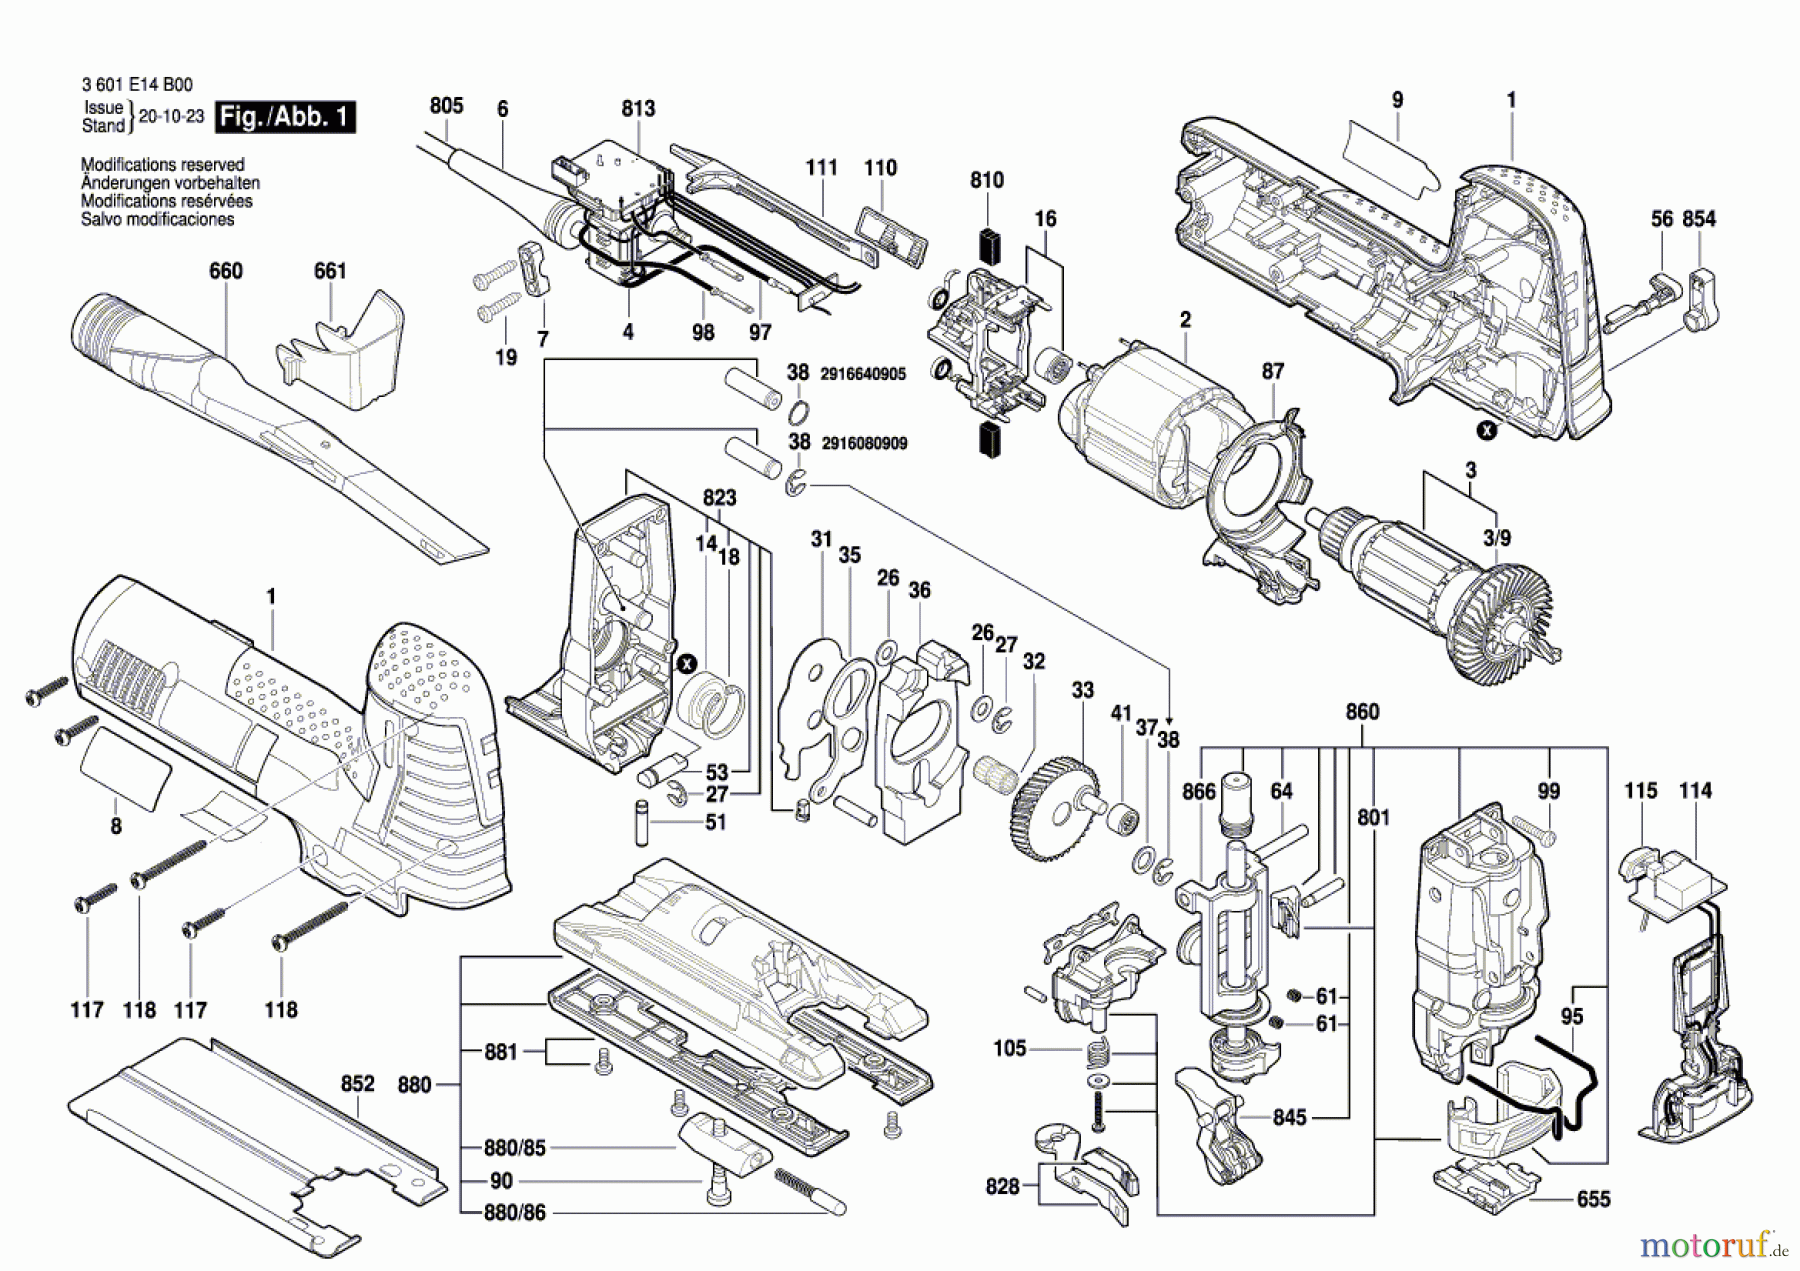  Bosch Werkzeug Stichsäge BJS SHO 140 Seite 1